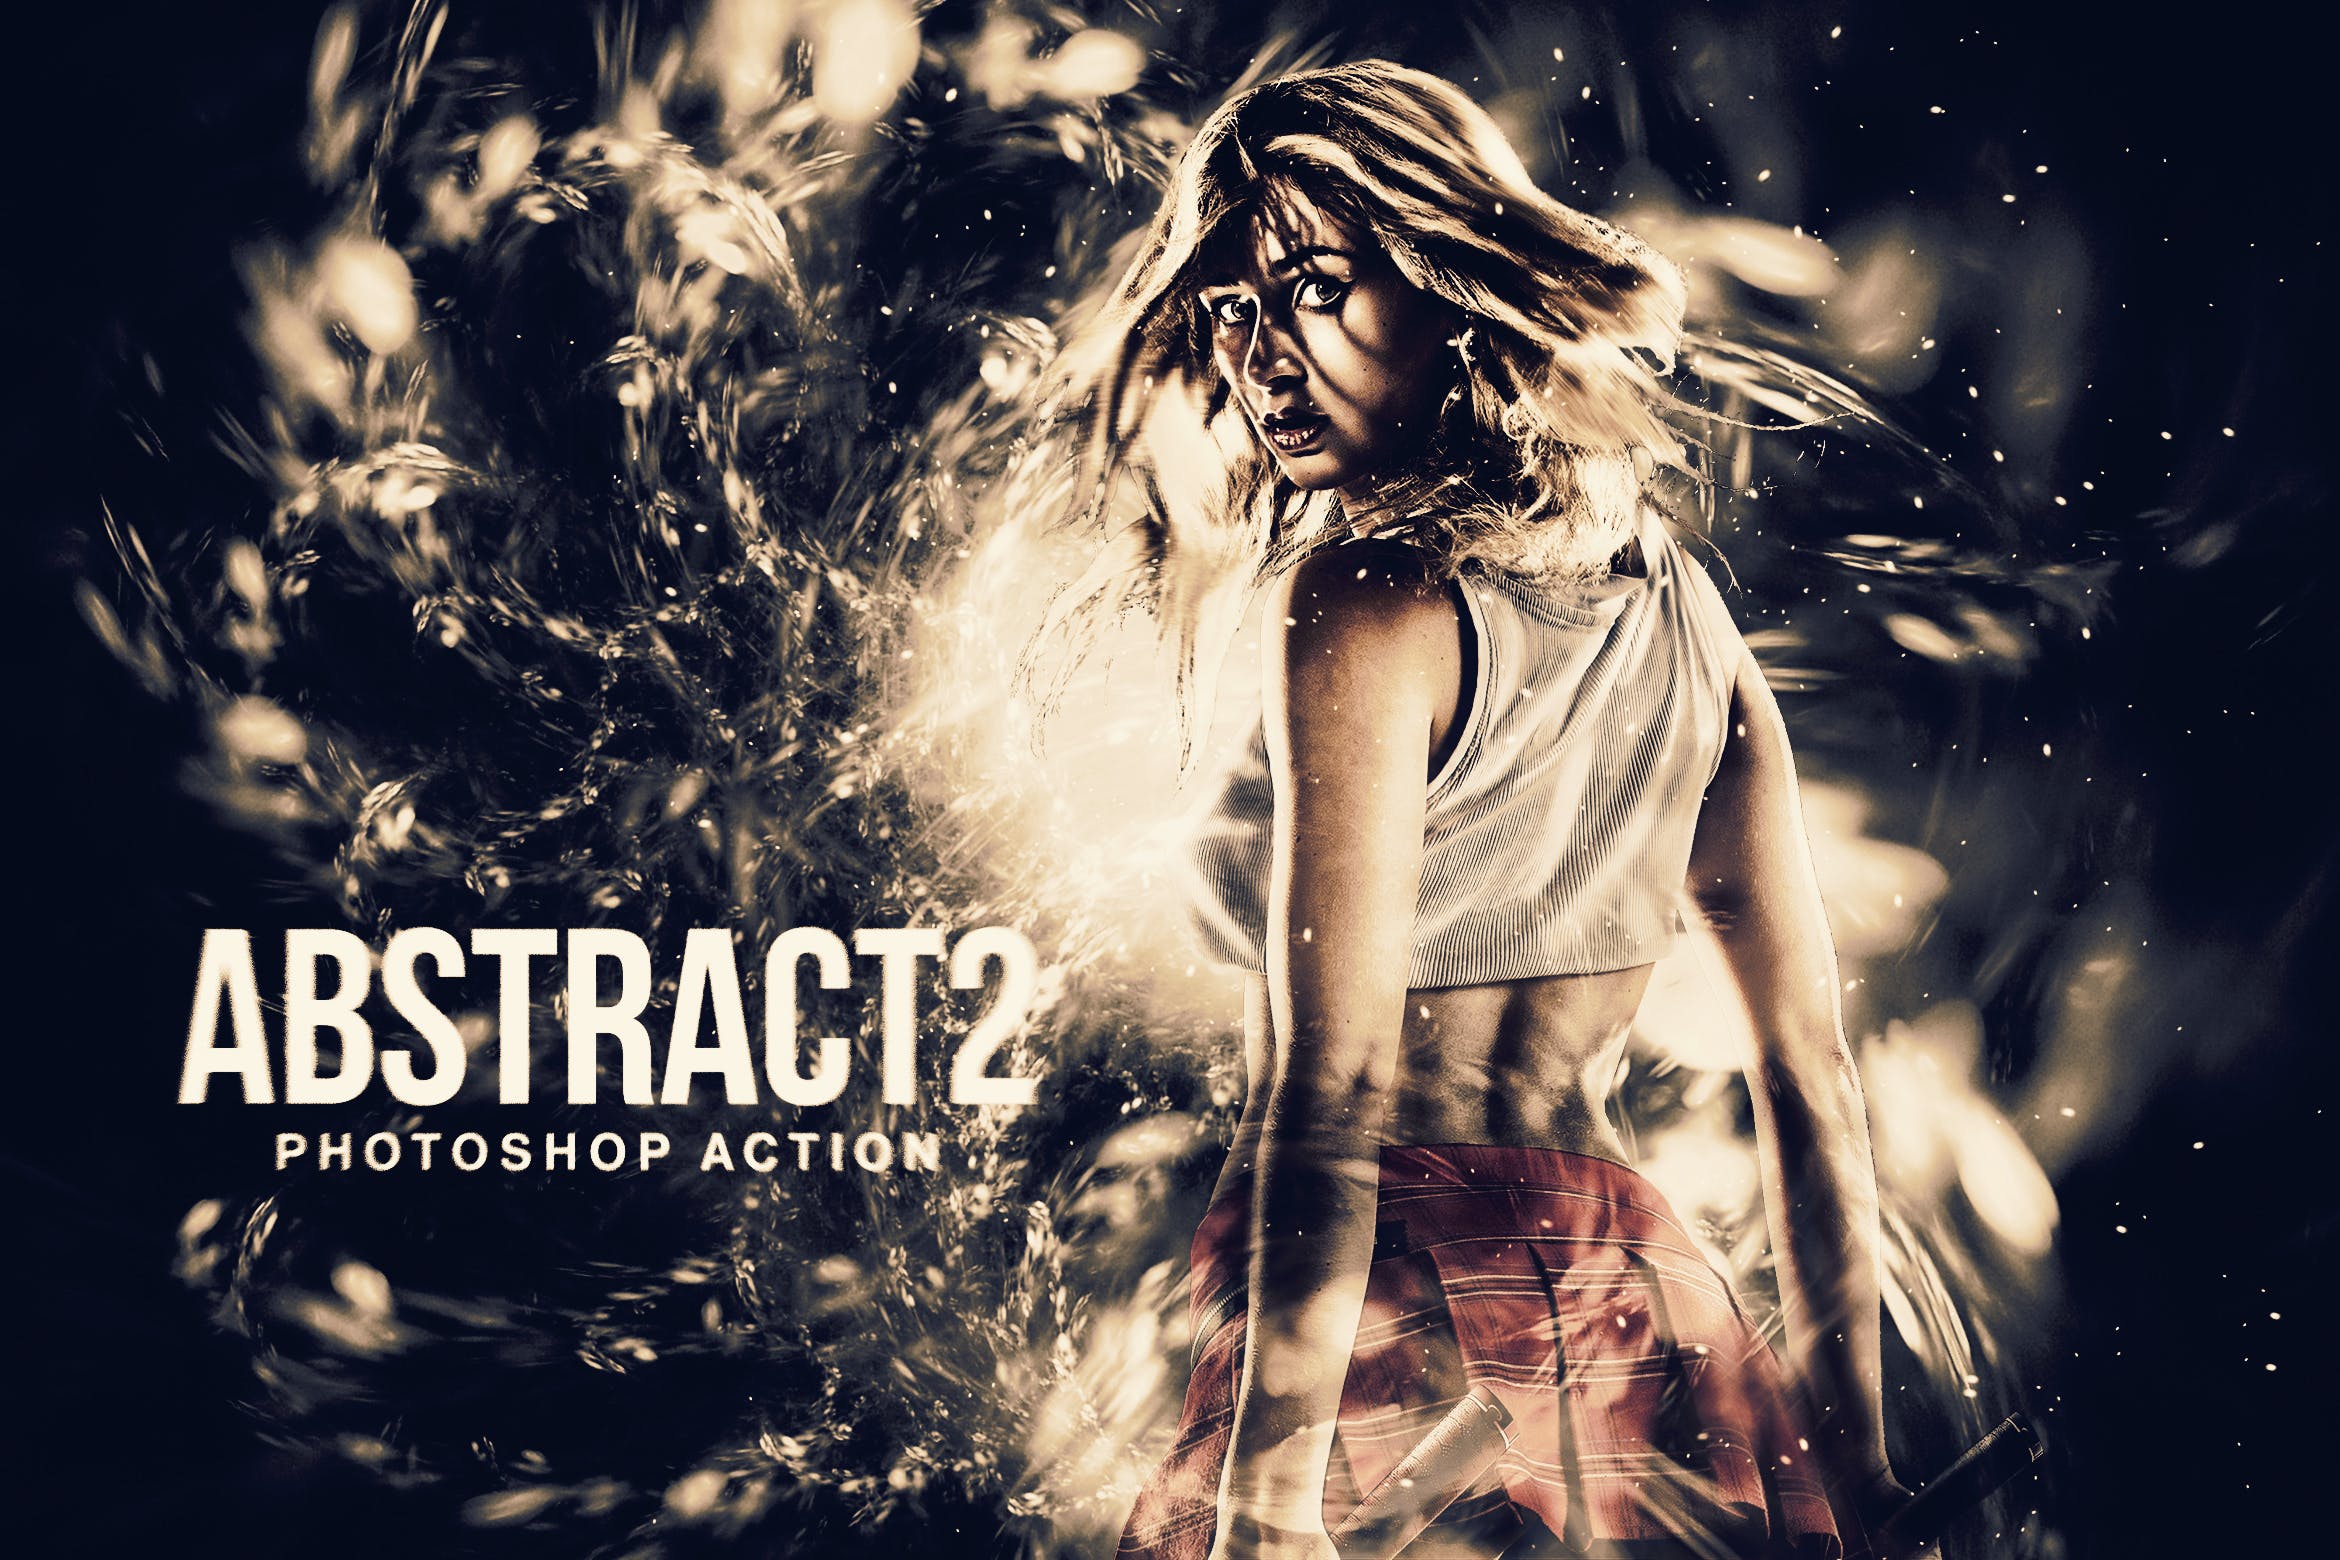 炫酷的人物特效海报处理PS动作 Abstract 2 Photoshop Action插图